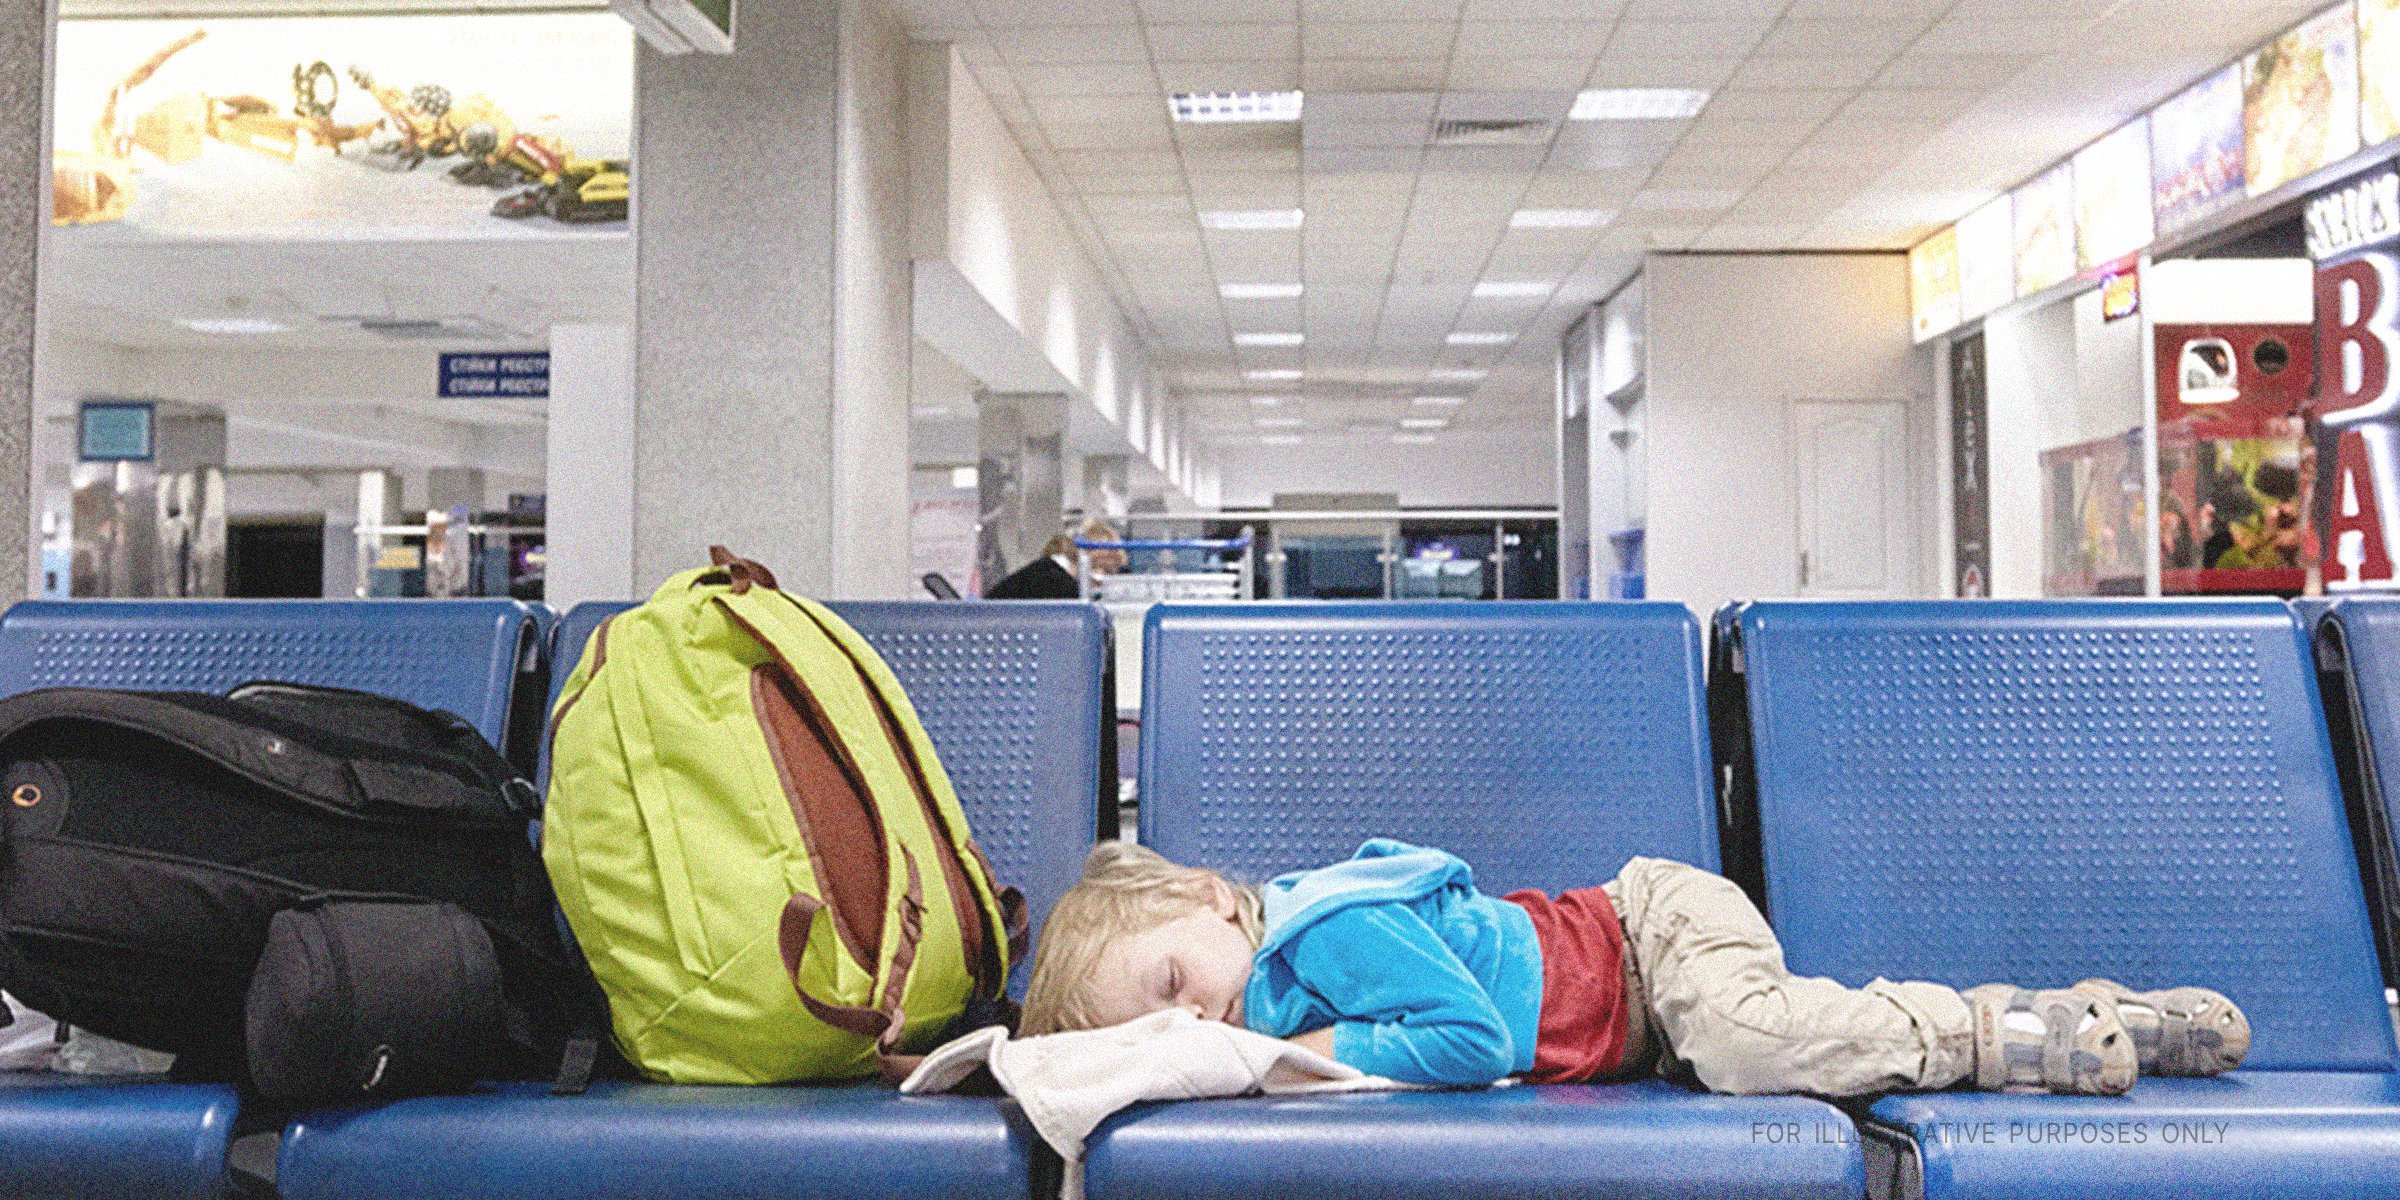 Little Boy Sleeping On Seats At an Airport. | Source: Shutterstock